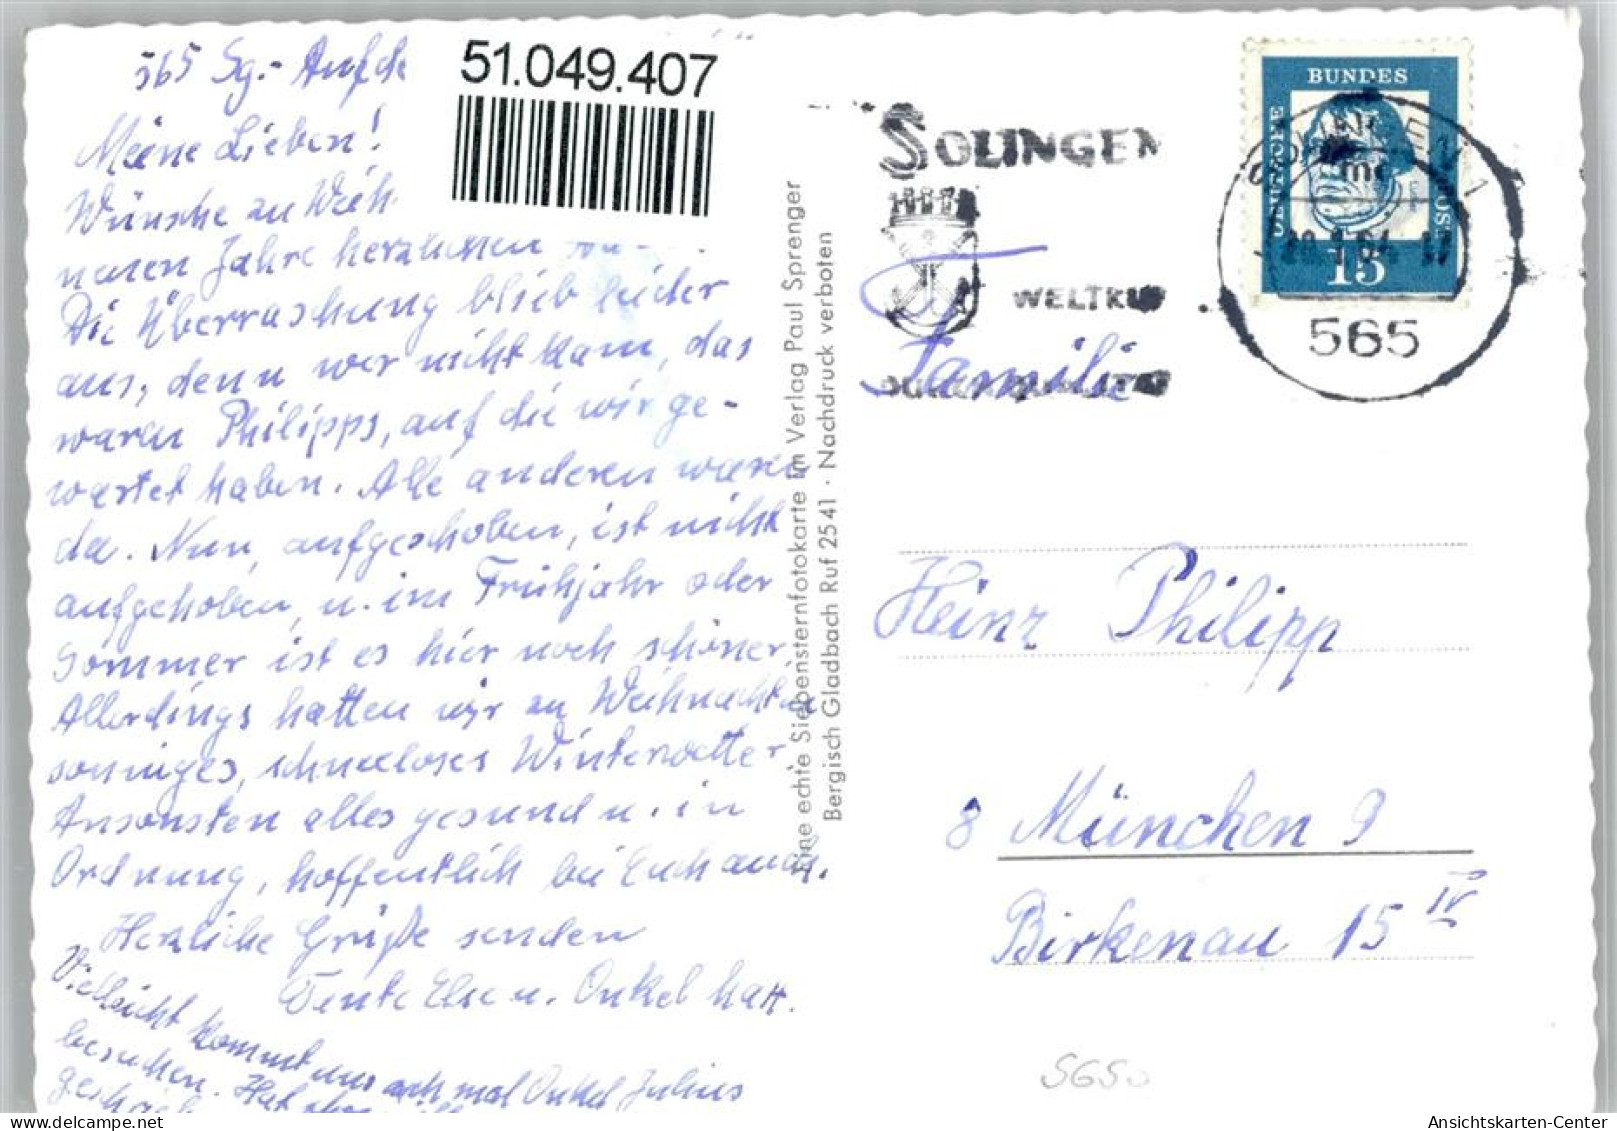 51049407 - Aufderhoehe - Solingen